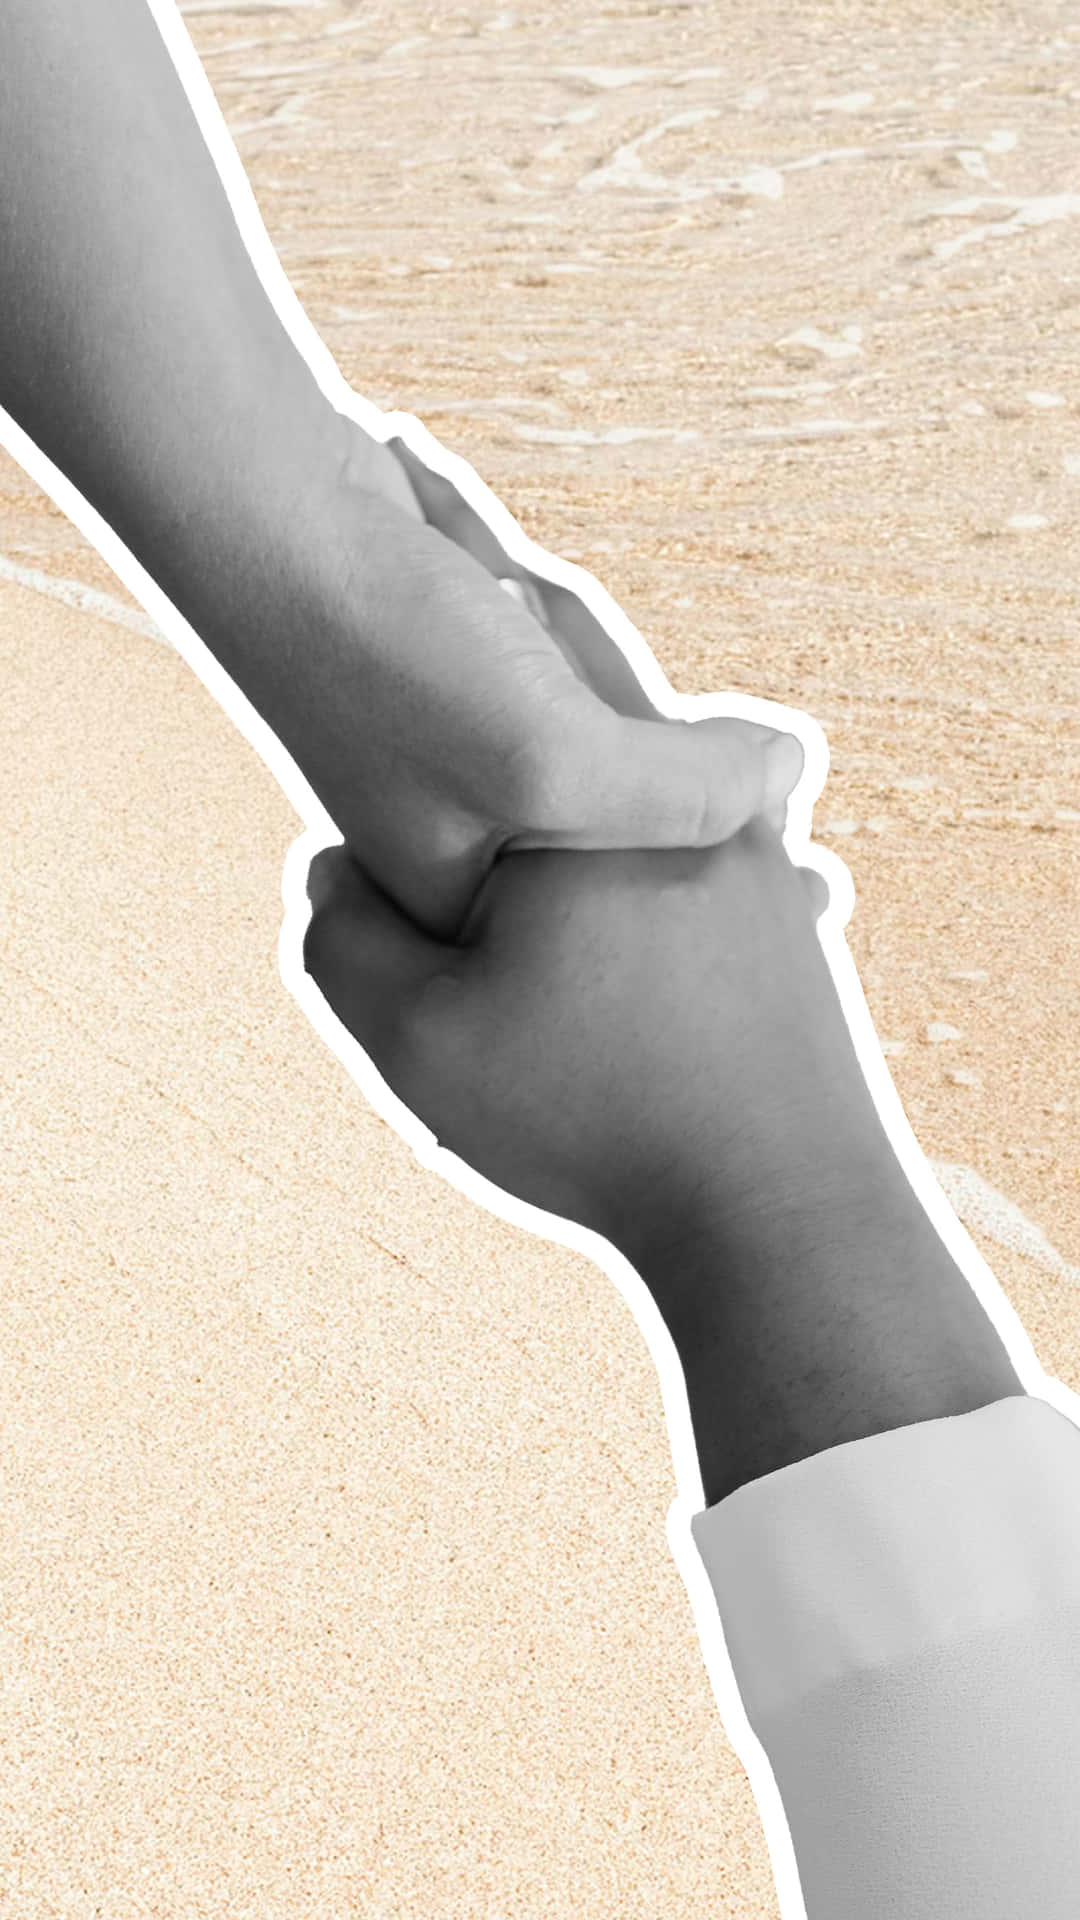 Handshake On Beach